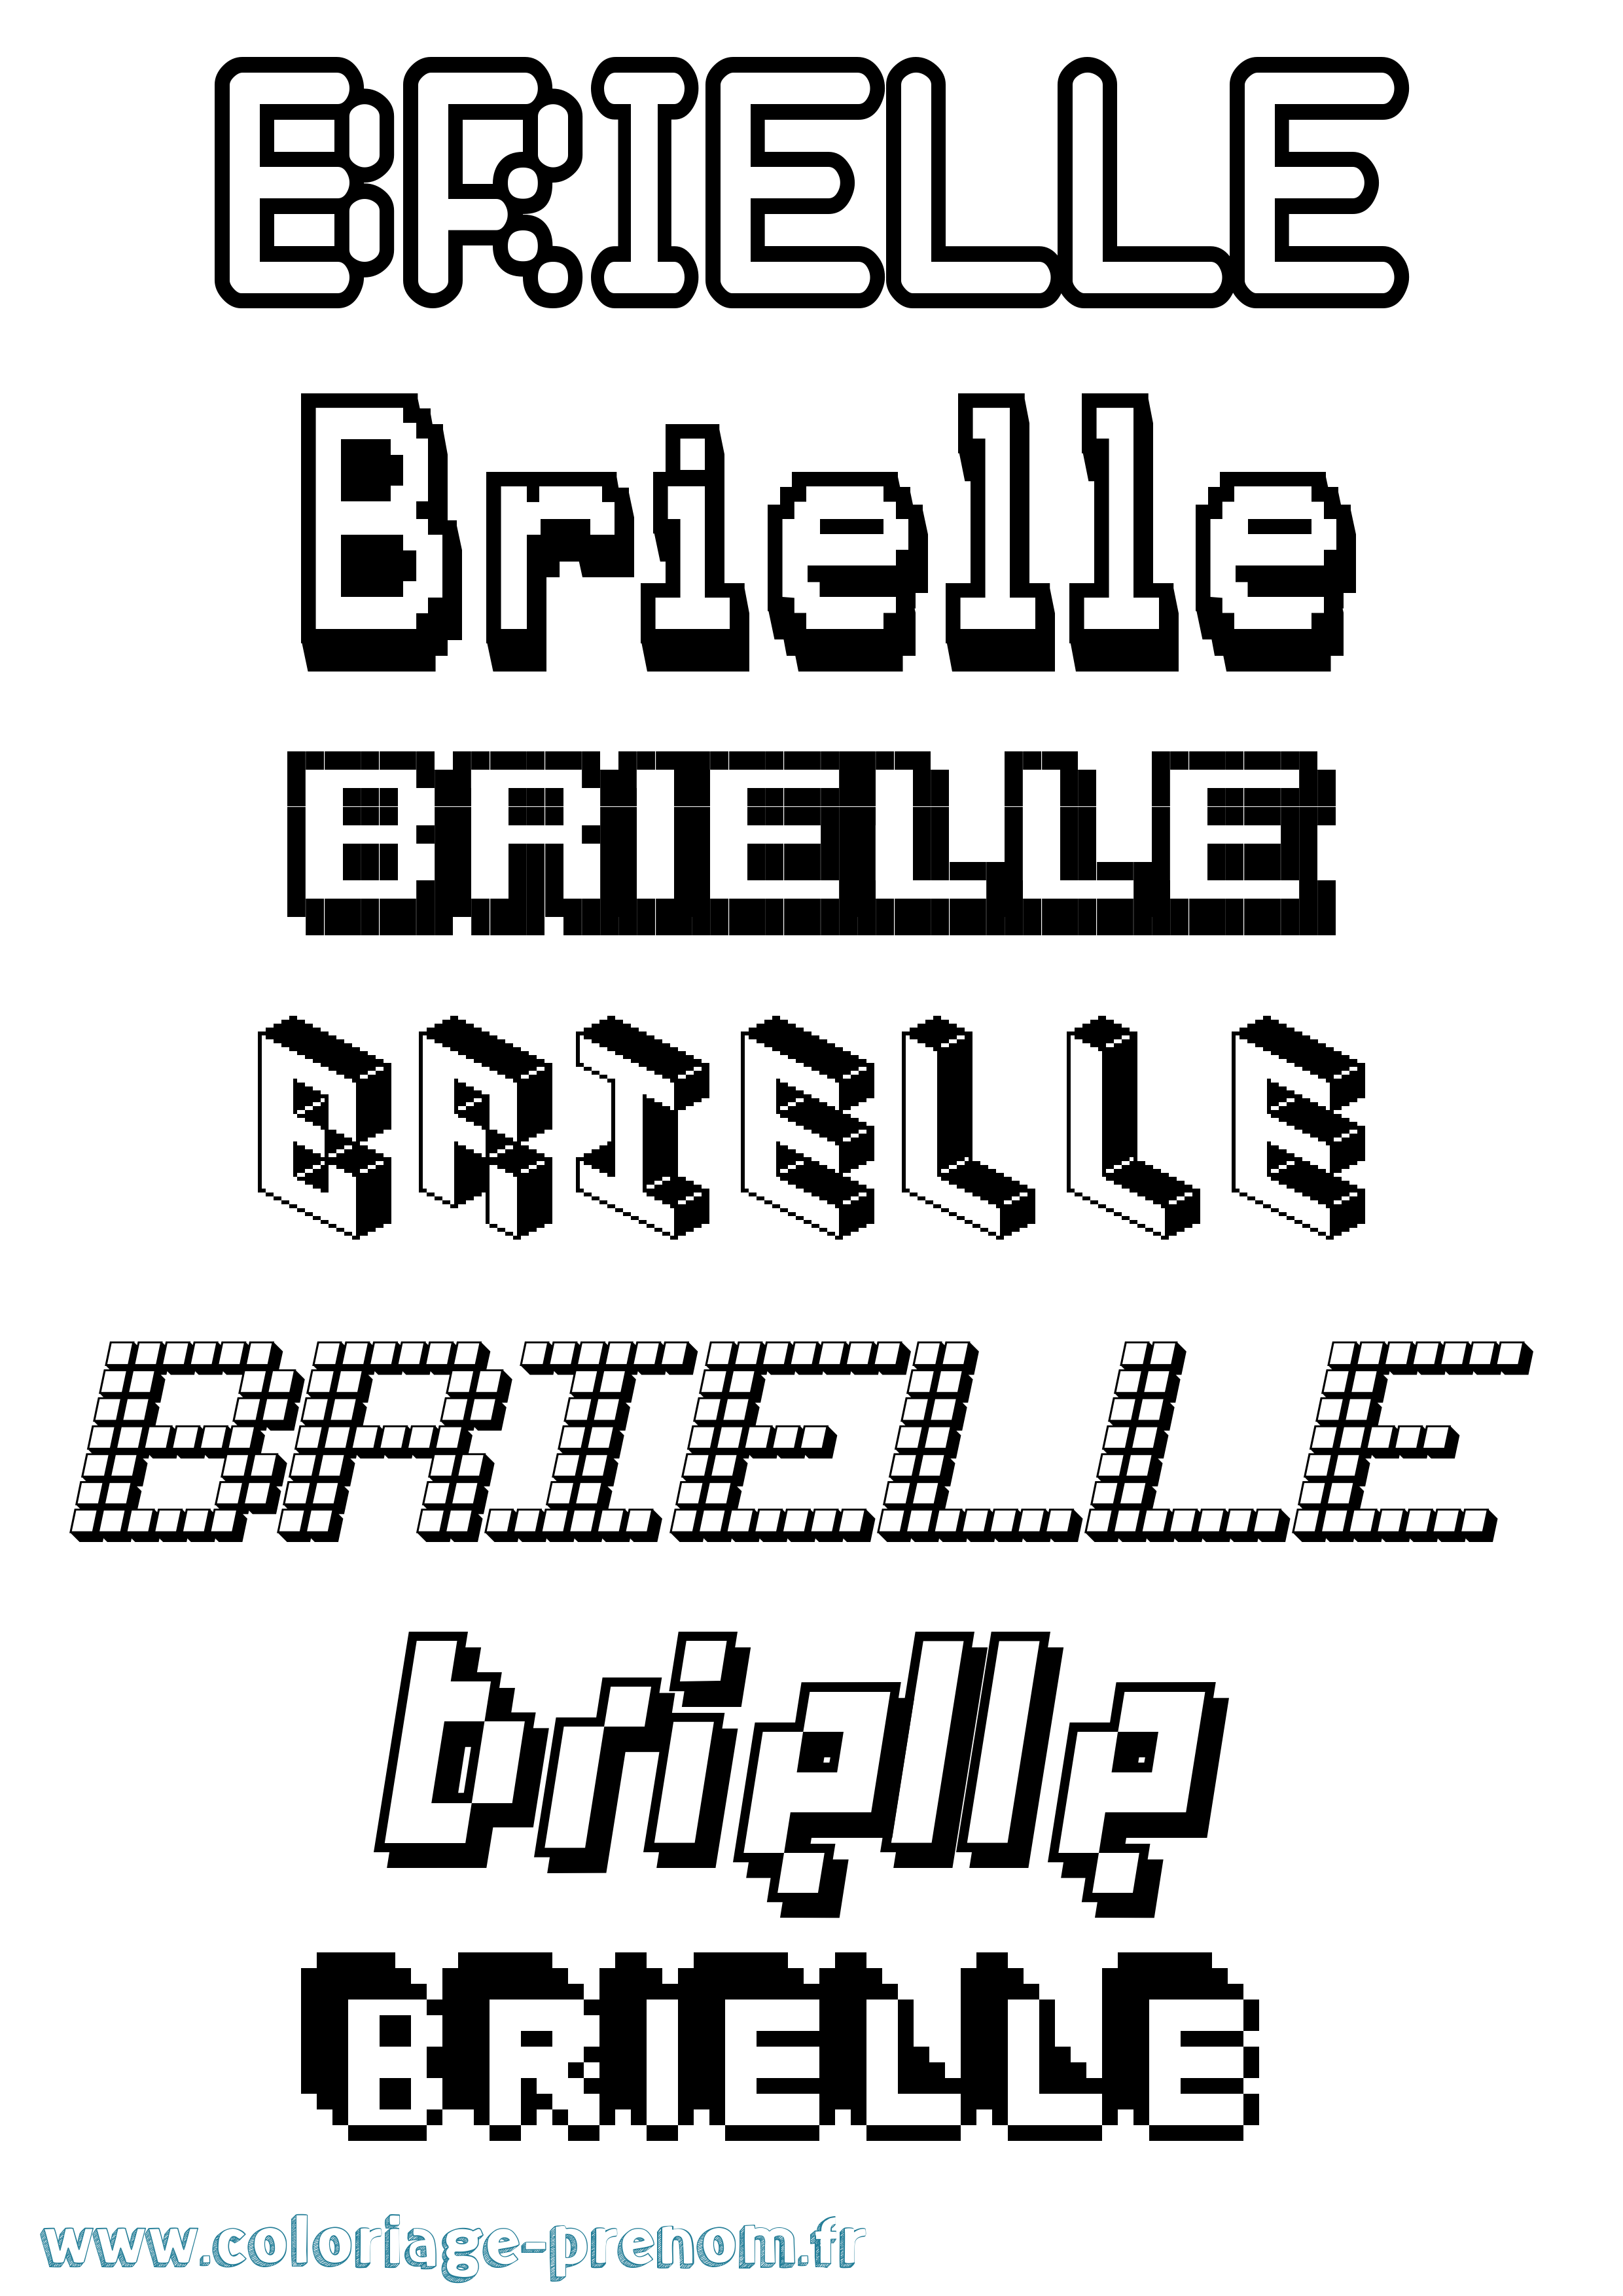 Coloriage prénom Brielle Pixel